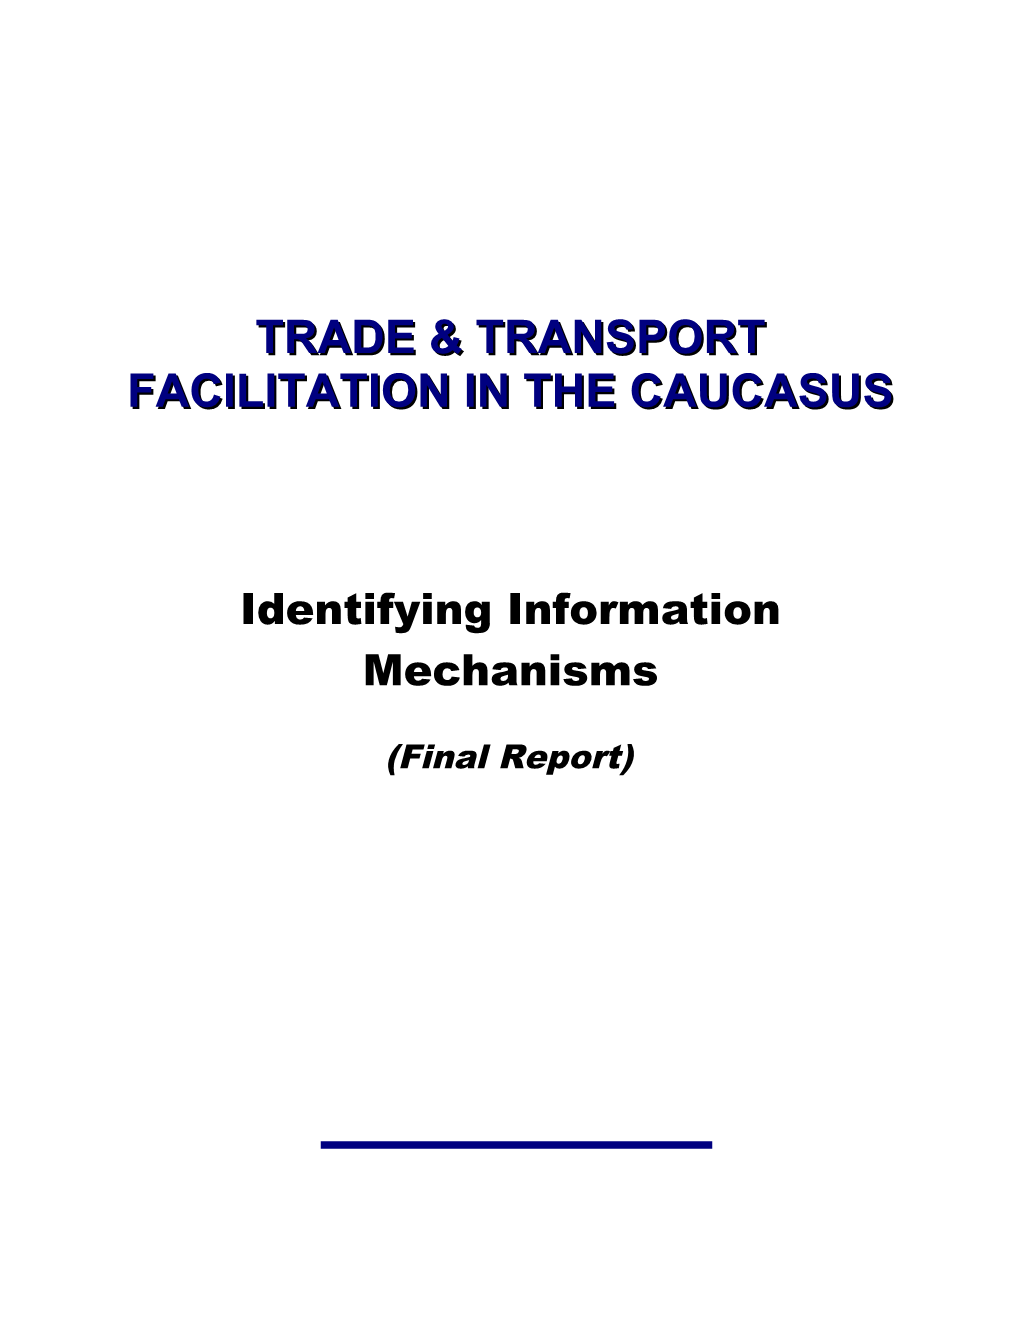 Trade & Transport Facilitation in the Caucasus